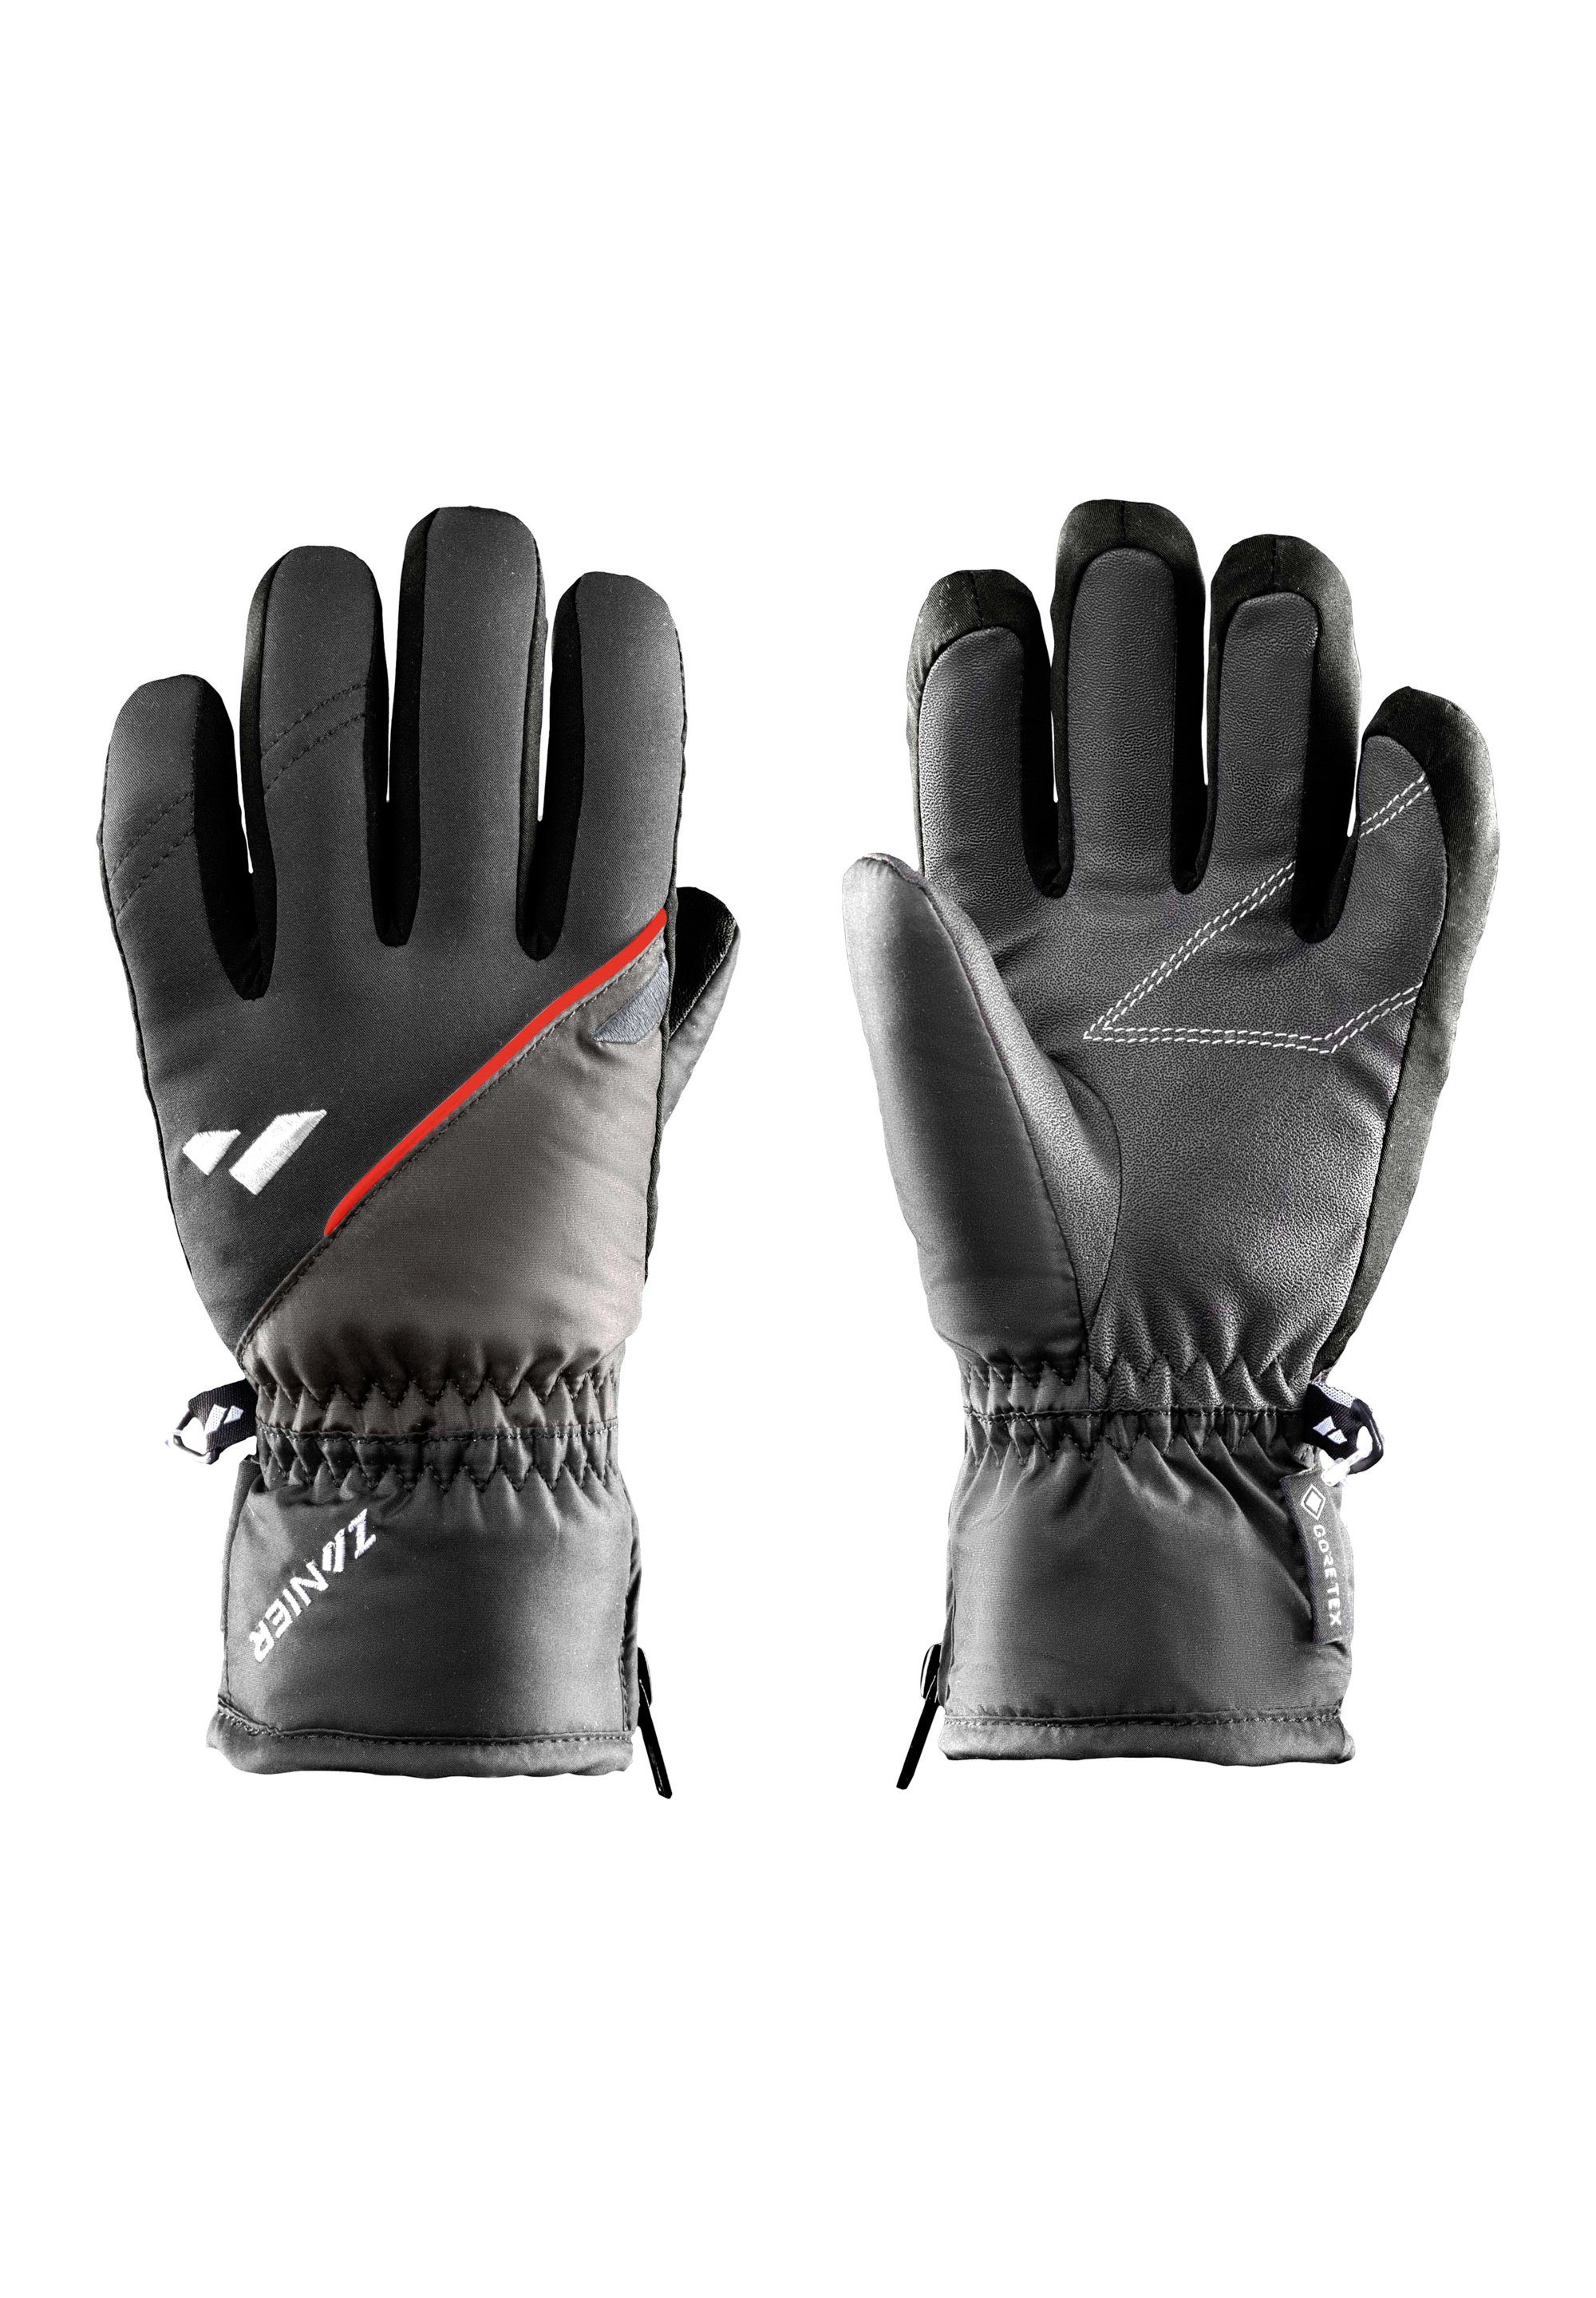 We Zanier schwarz on gloves RAURIS.GTX Multisporthandschuhe focus rot